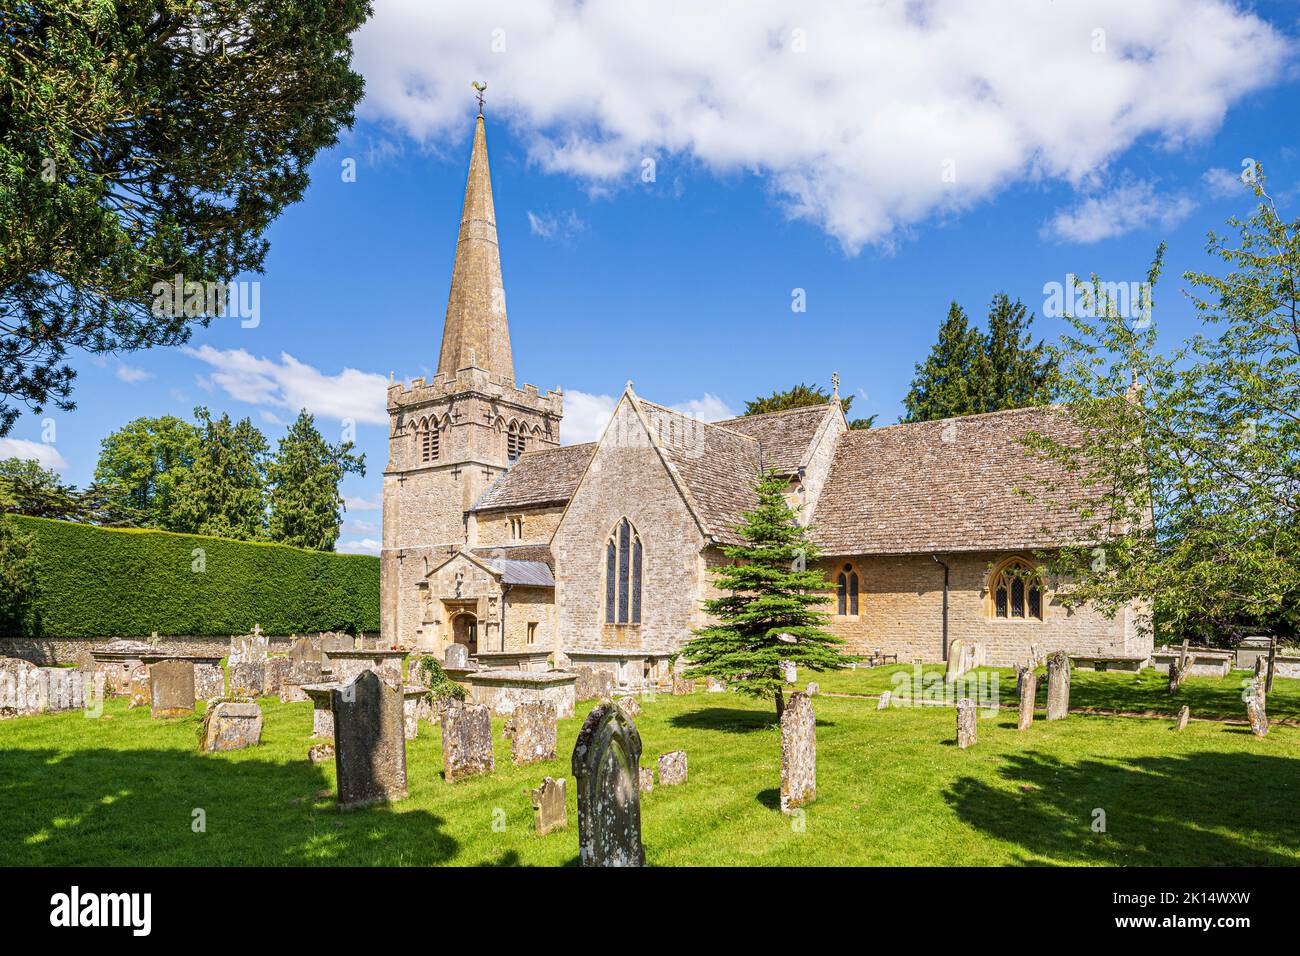 All Saints en el pueblo Cotswold de Down Ampney, Gloucestershire, Reino Unido. Ralph Vaughan Williams nació en el antiguo Vicarage en 1872. Foto de stock